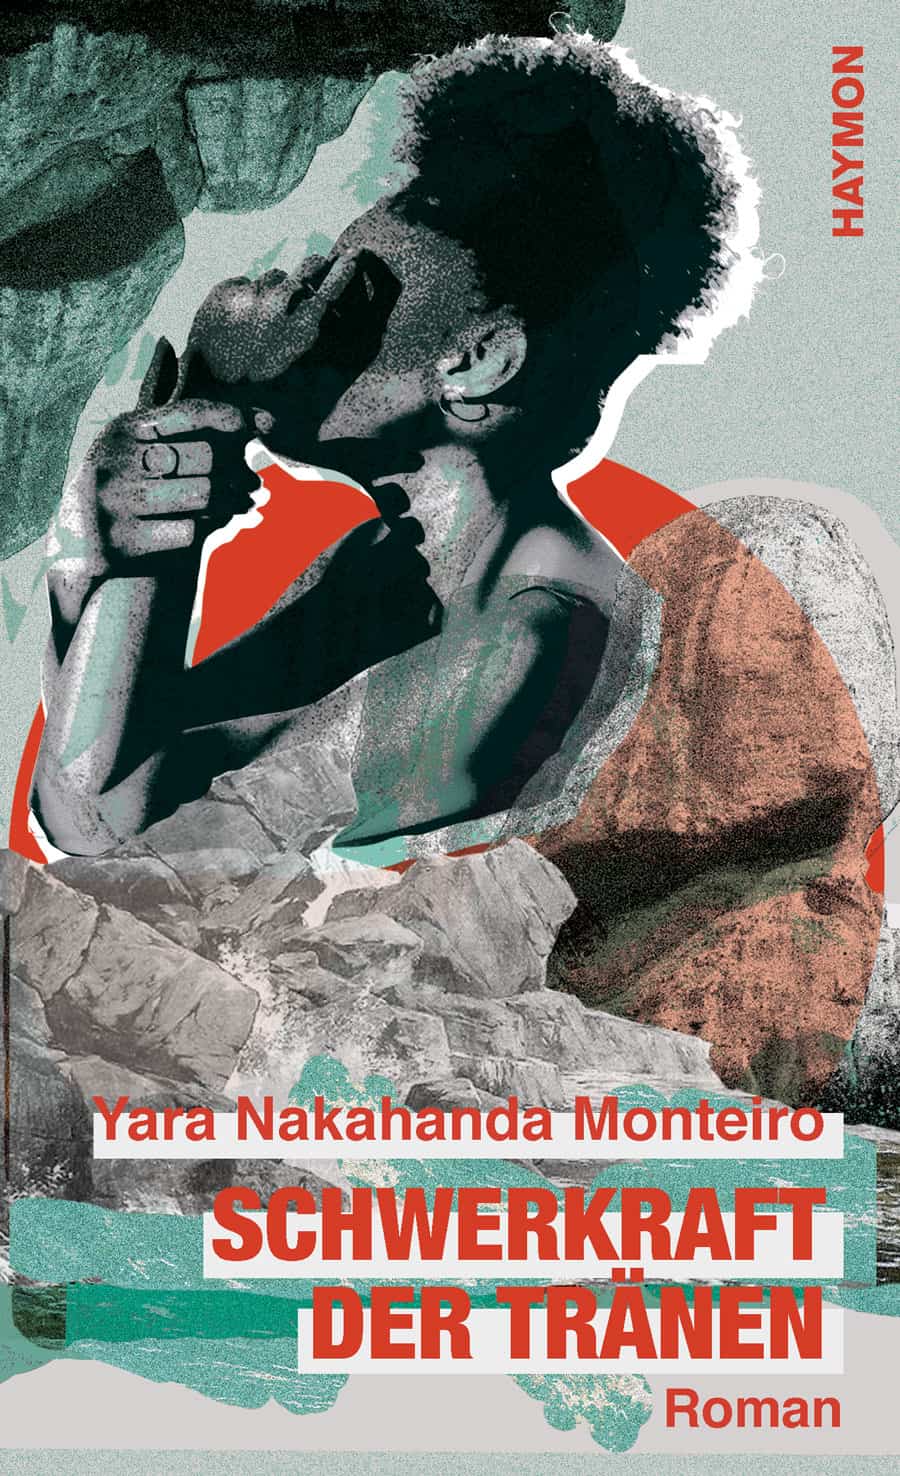 Lesung mit Yara Monteiro "Schwerkraft der Tränen"